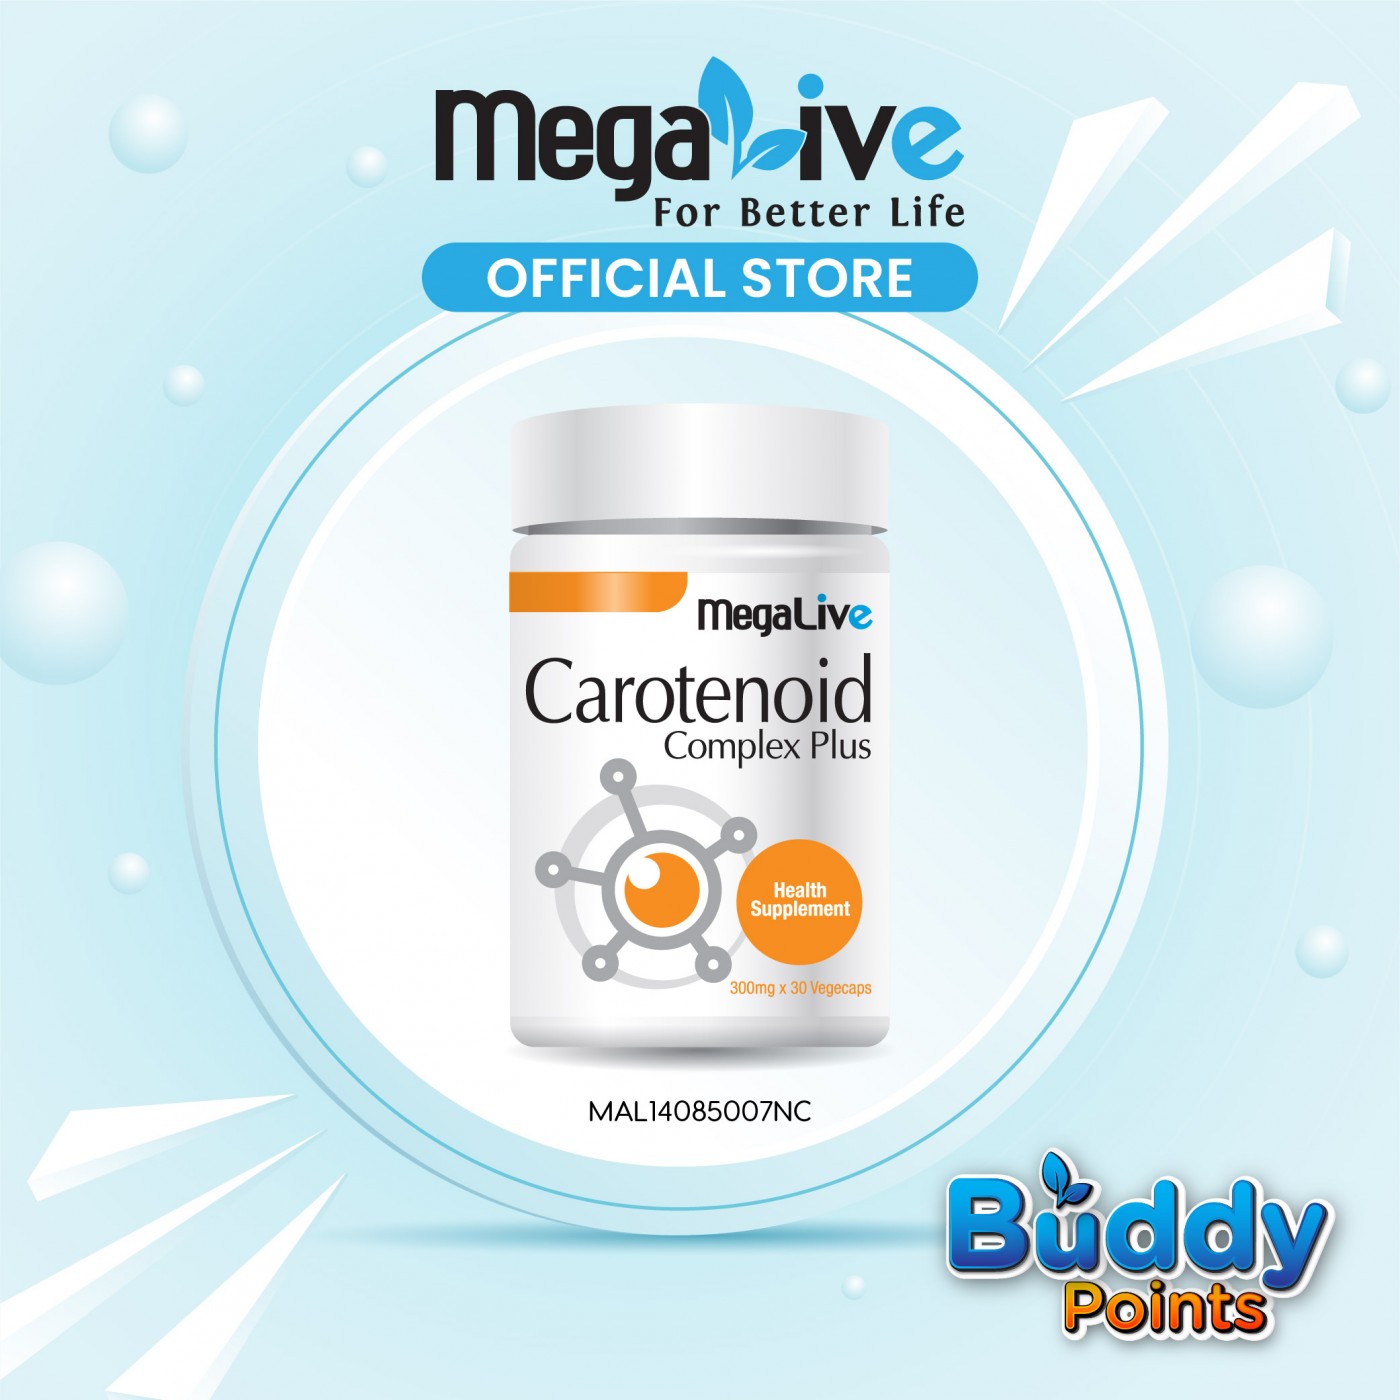 MegaLive Carotenoid Complex Plus